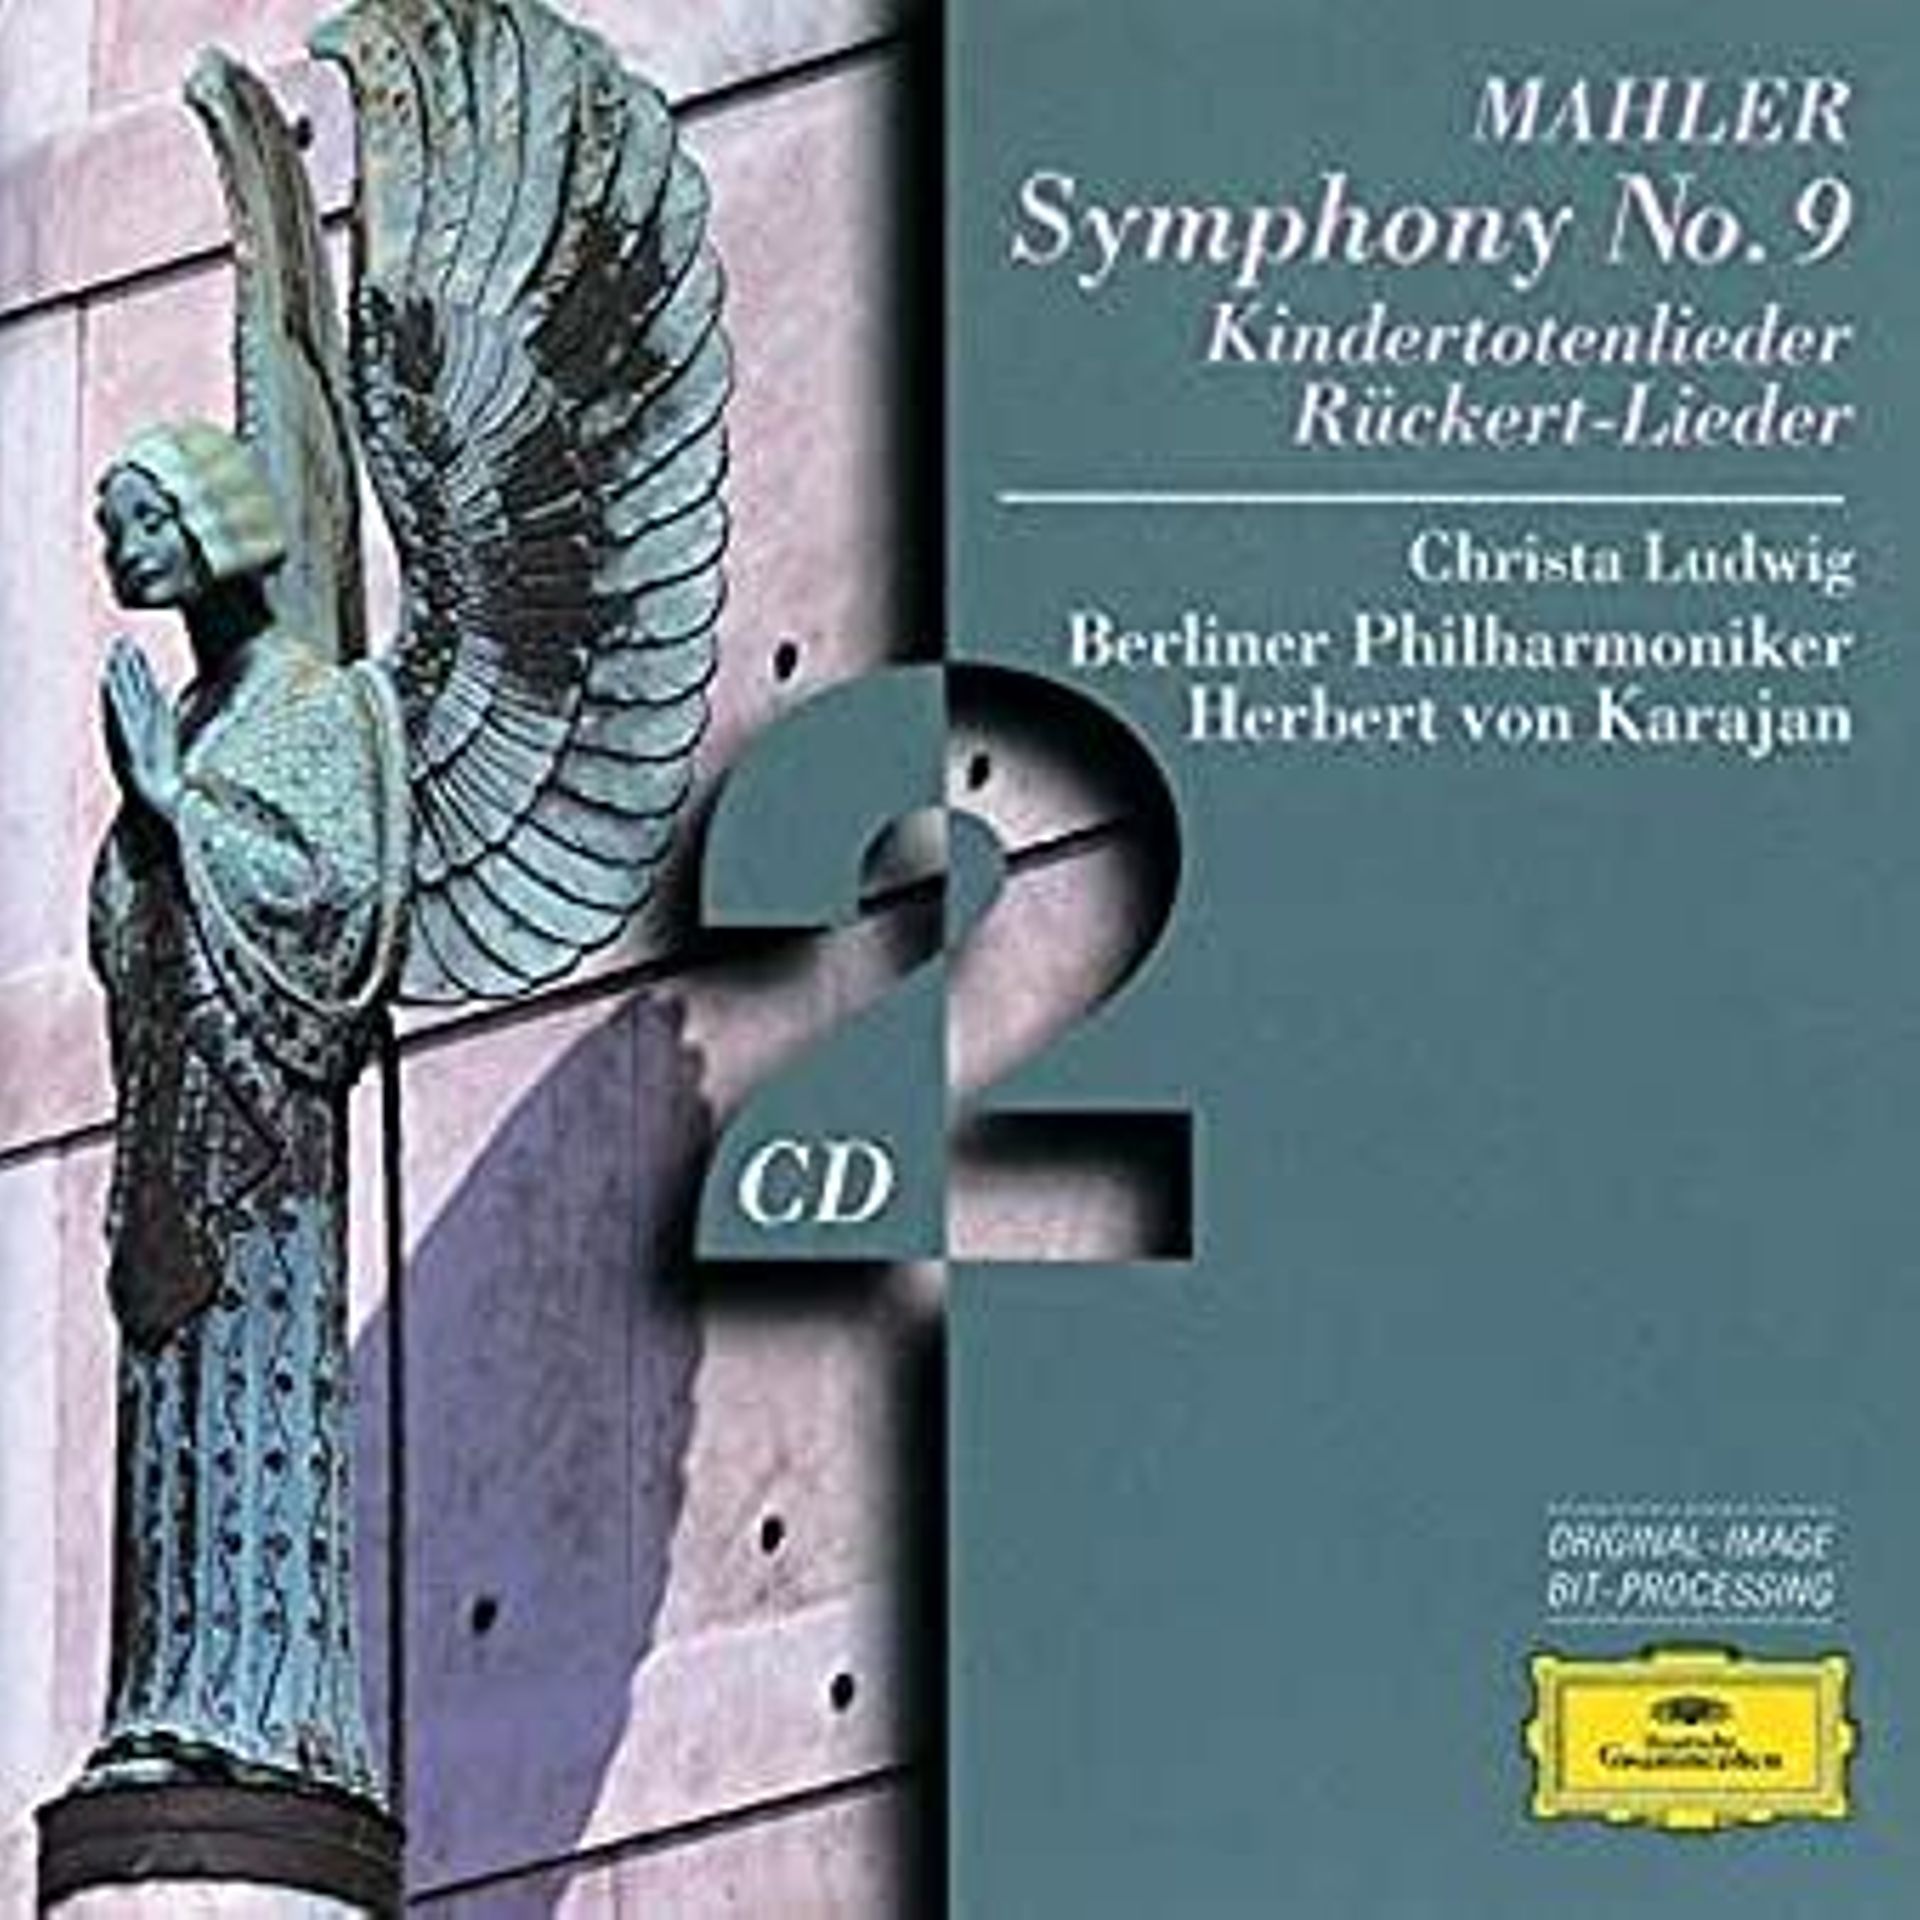 Karajan et Christa Ludwig : "Mahler - Symphony 9 / Kindertotenlieder" (1996)